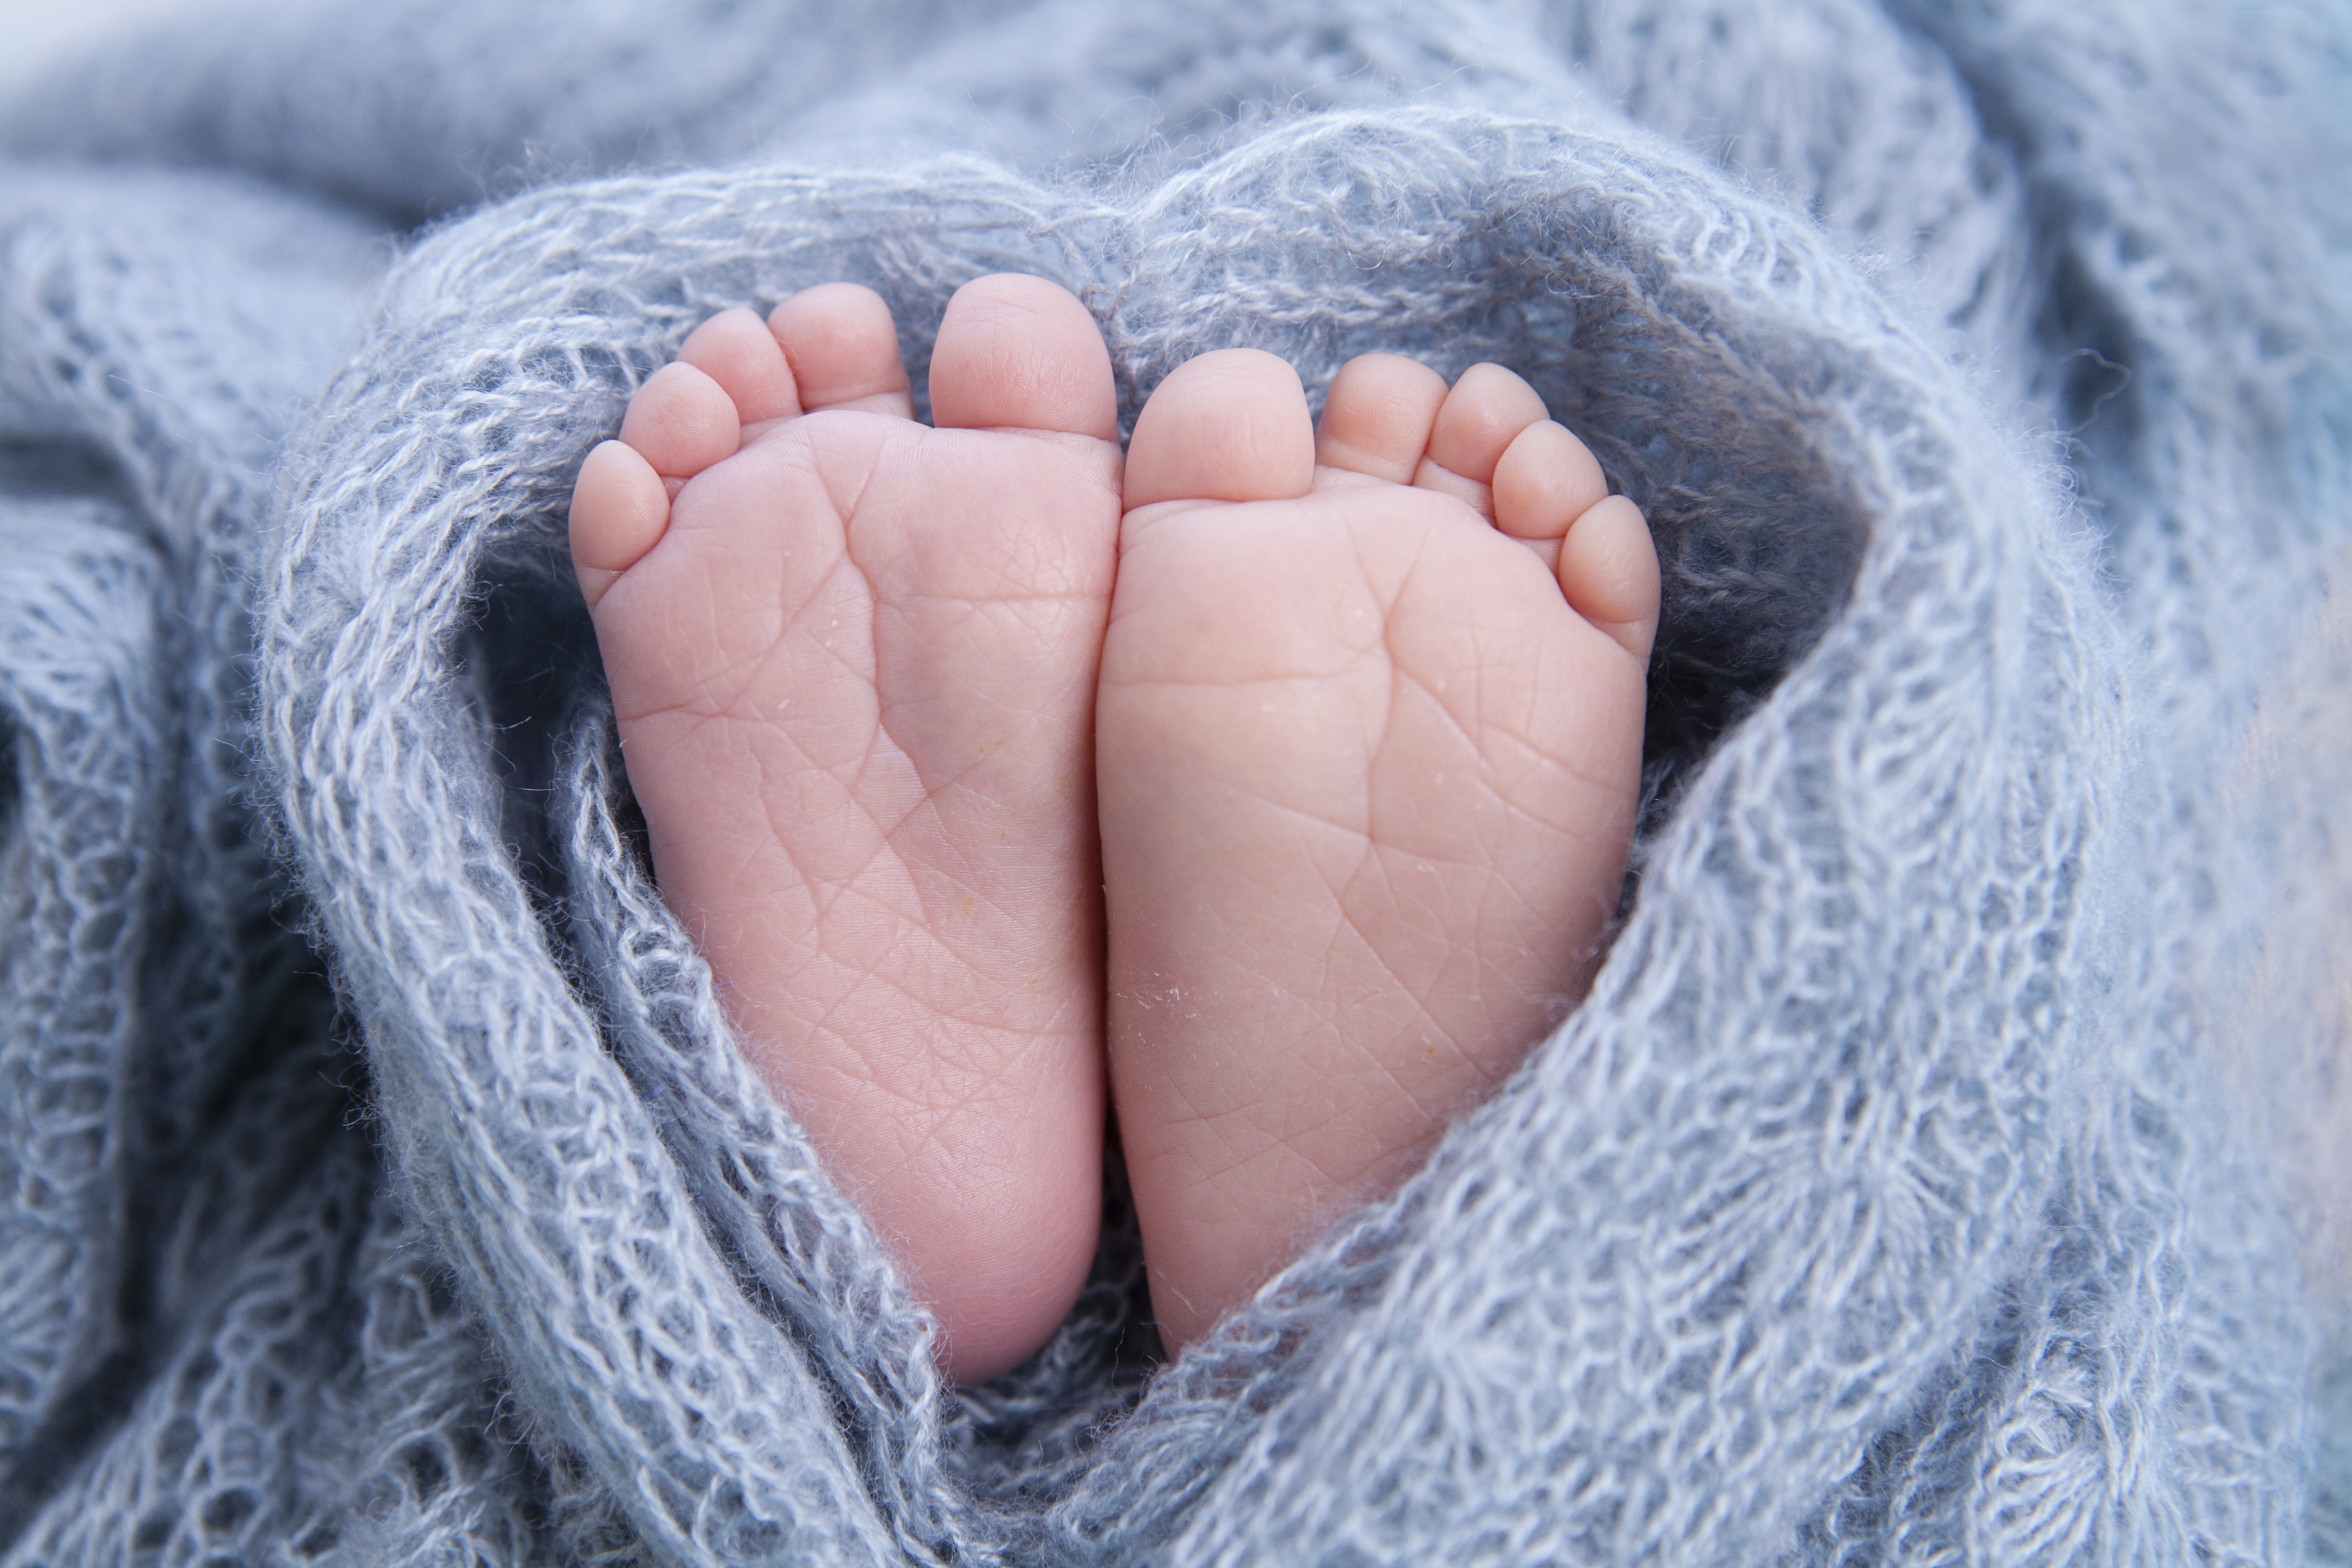 Pies de un bebé recién nacido. Fuente: Shutterstock